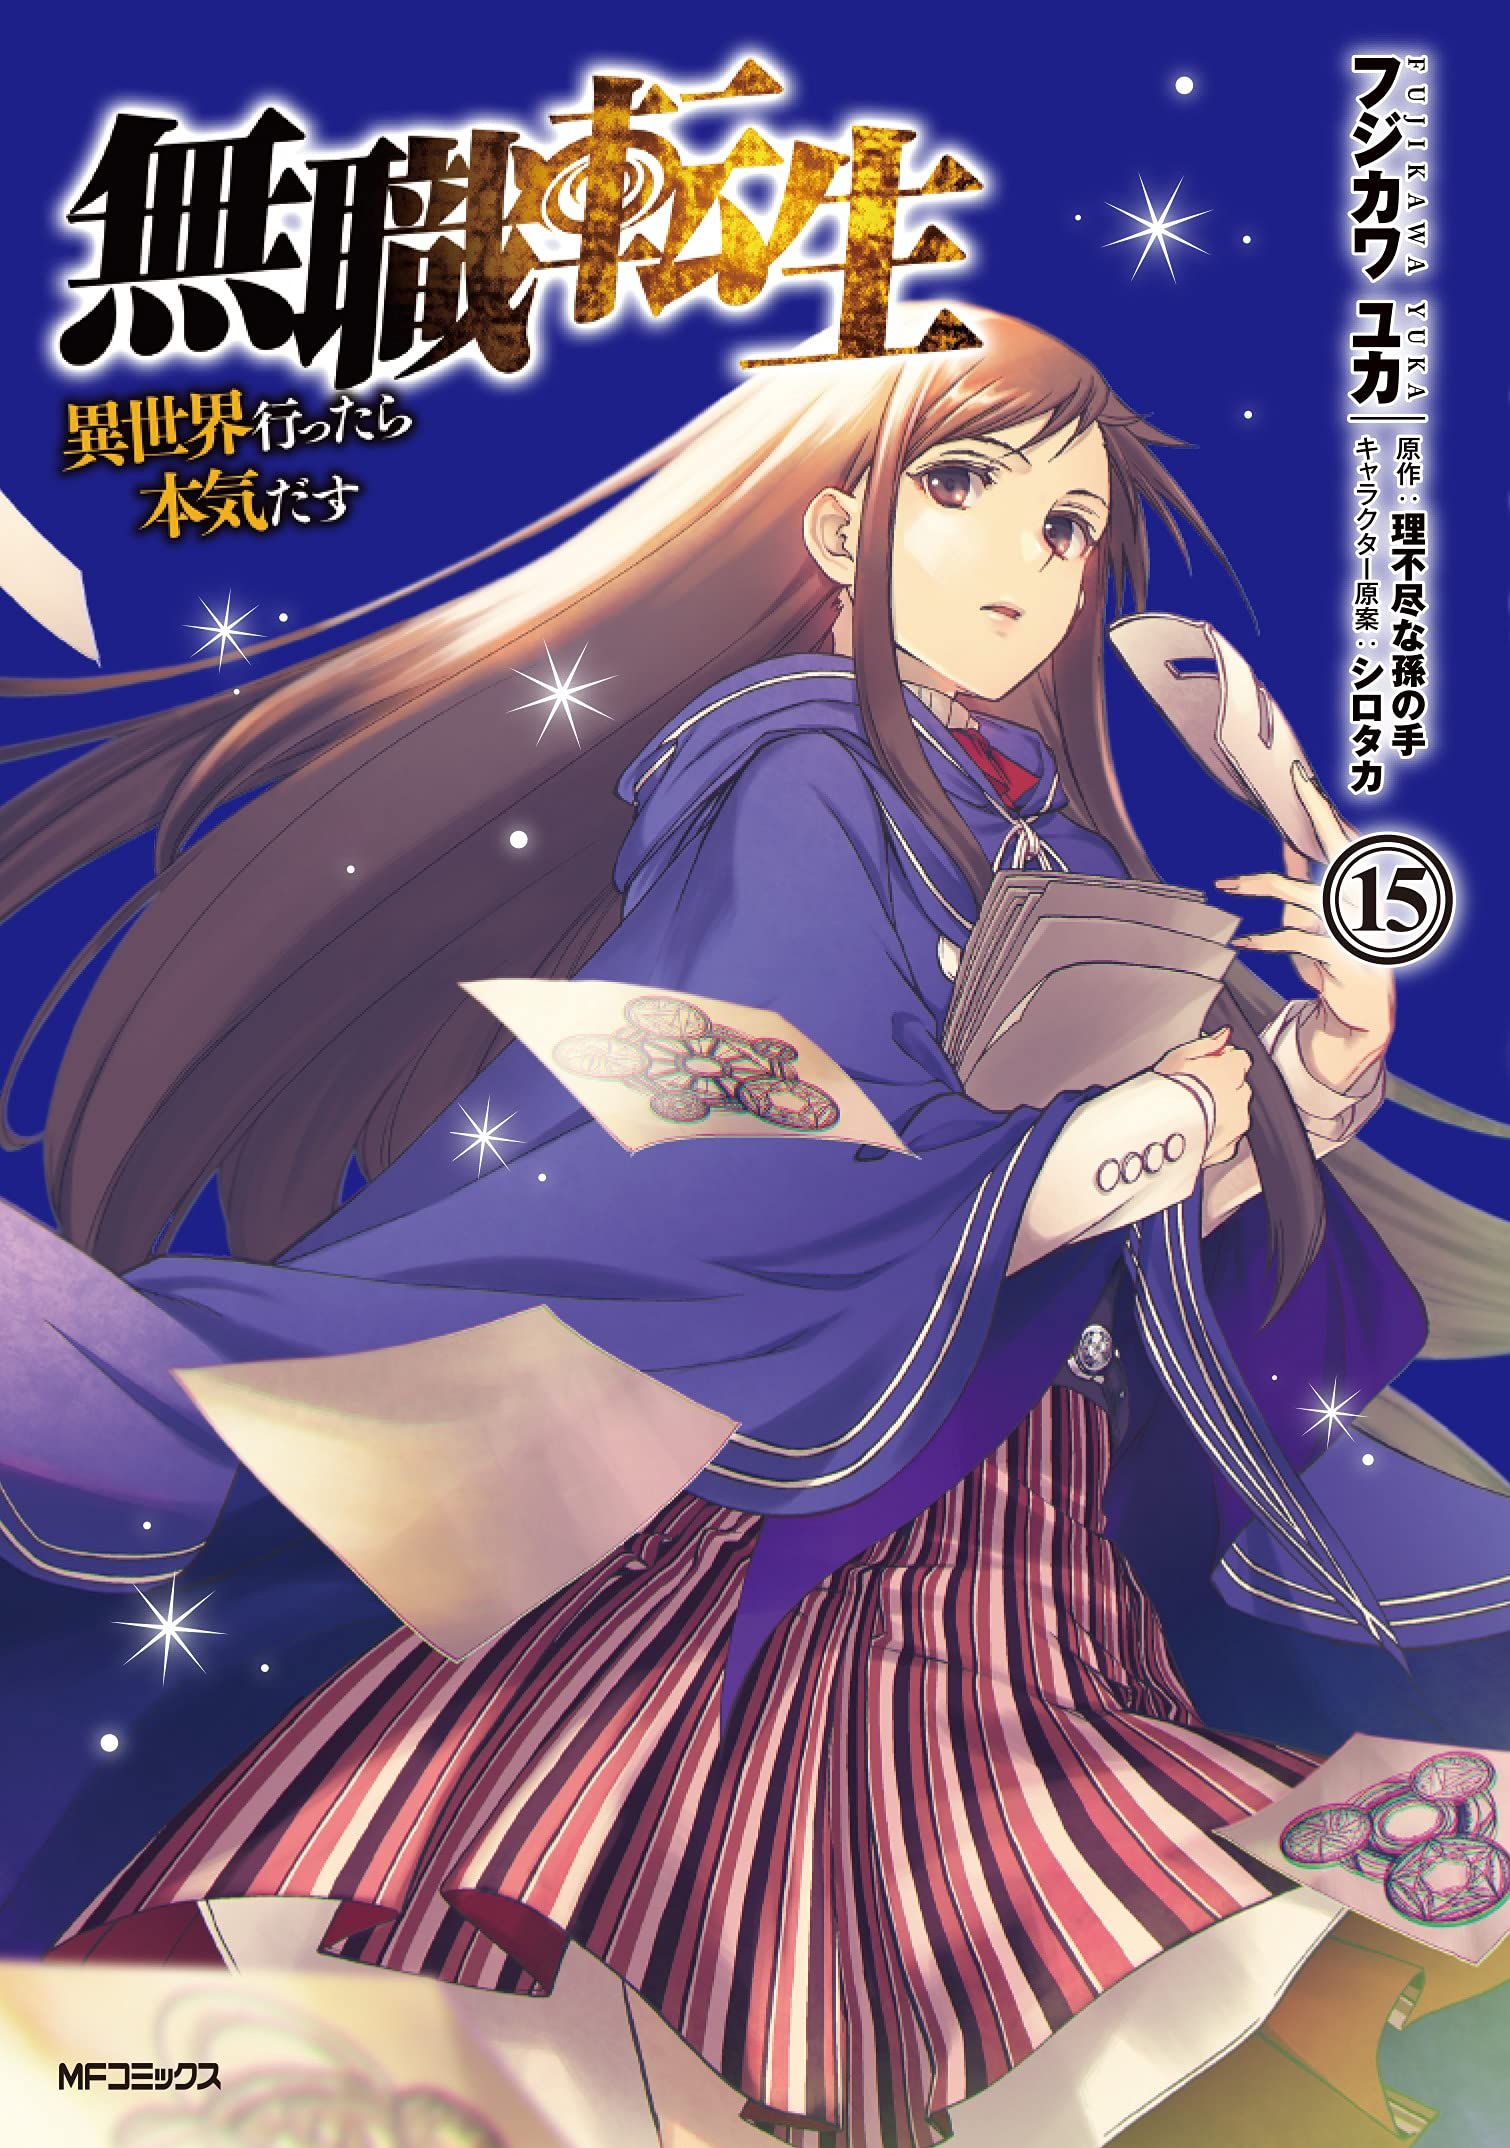 Manga Vo Mushoku Tensei Isekai Ittara Honki Dasu Jp Vol15 Fujikawa